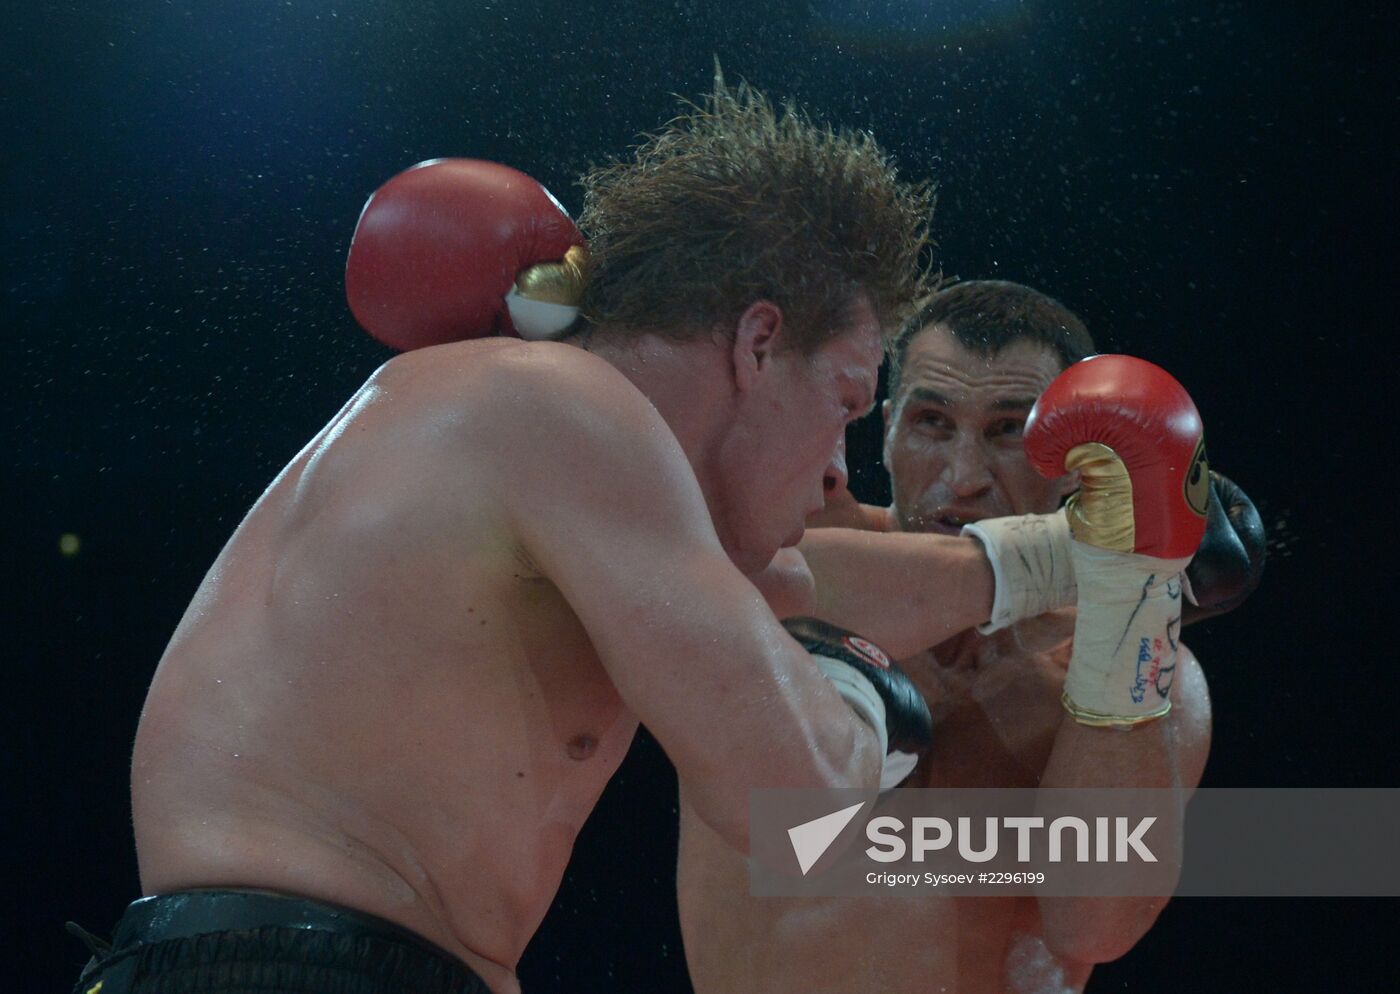 Boxing. Wladimir Klitschko vs. Alexander Povetkin